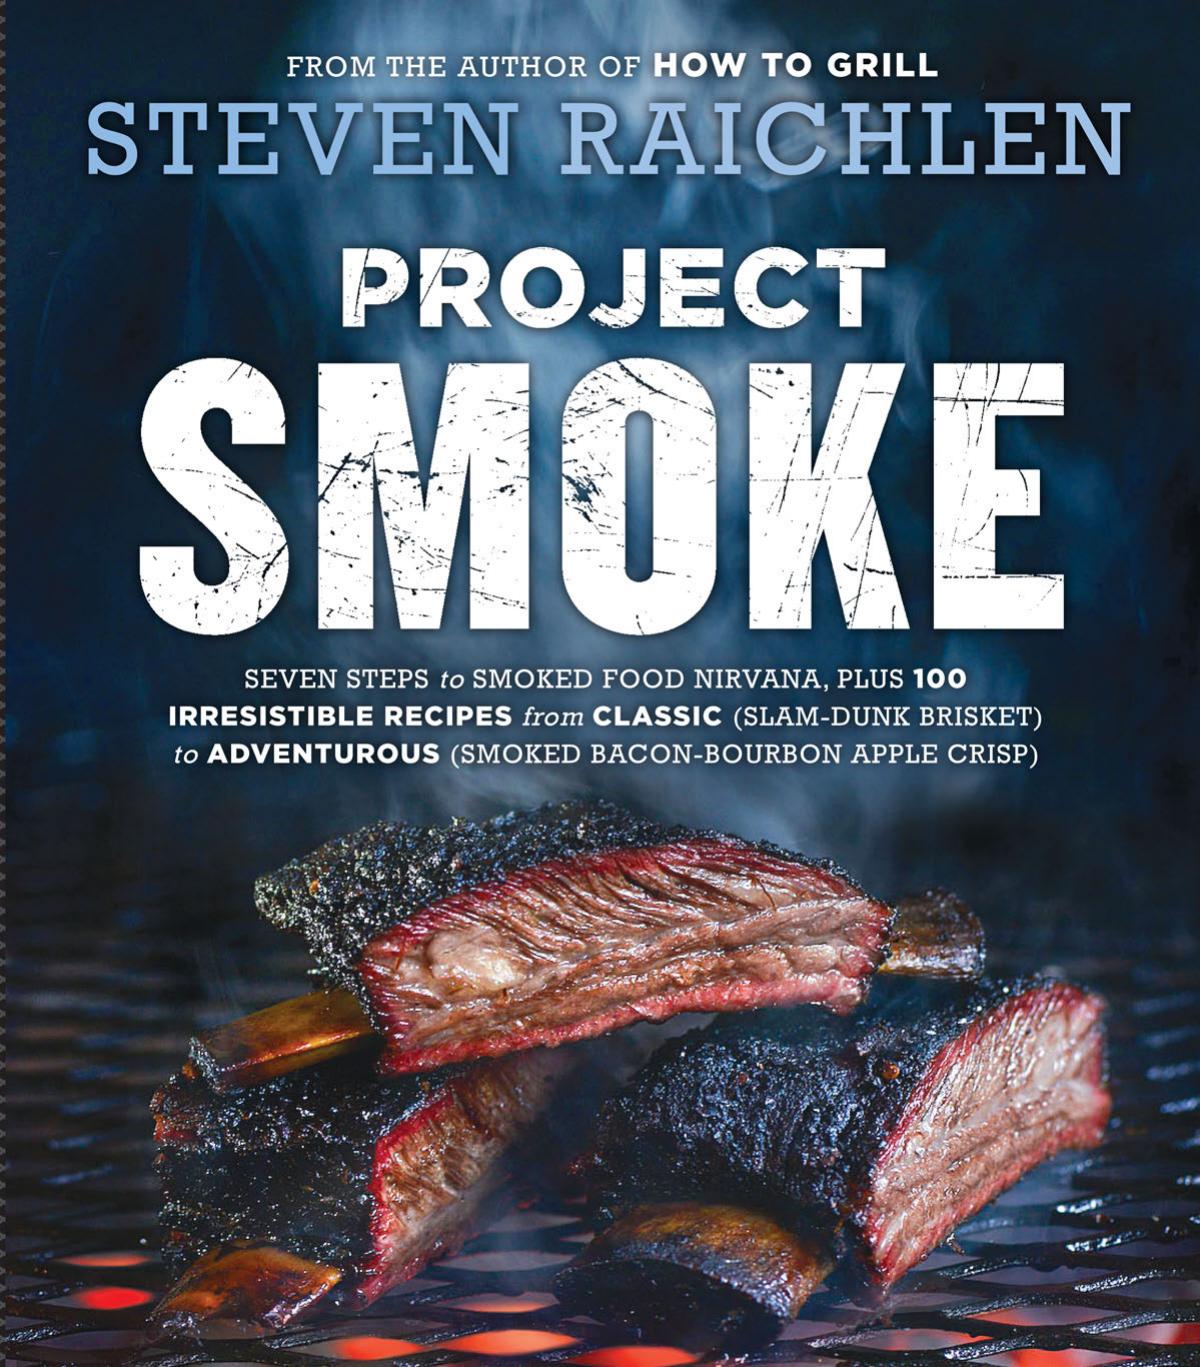 Project Smoke by Steven Raichlen